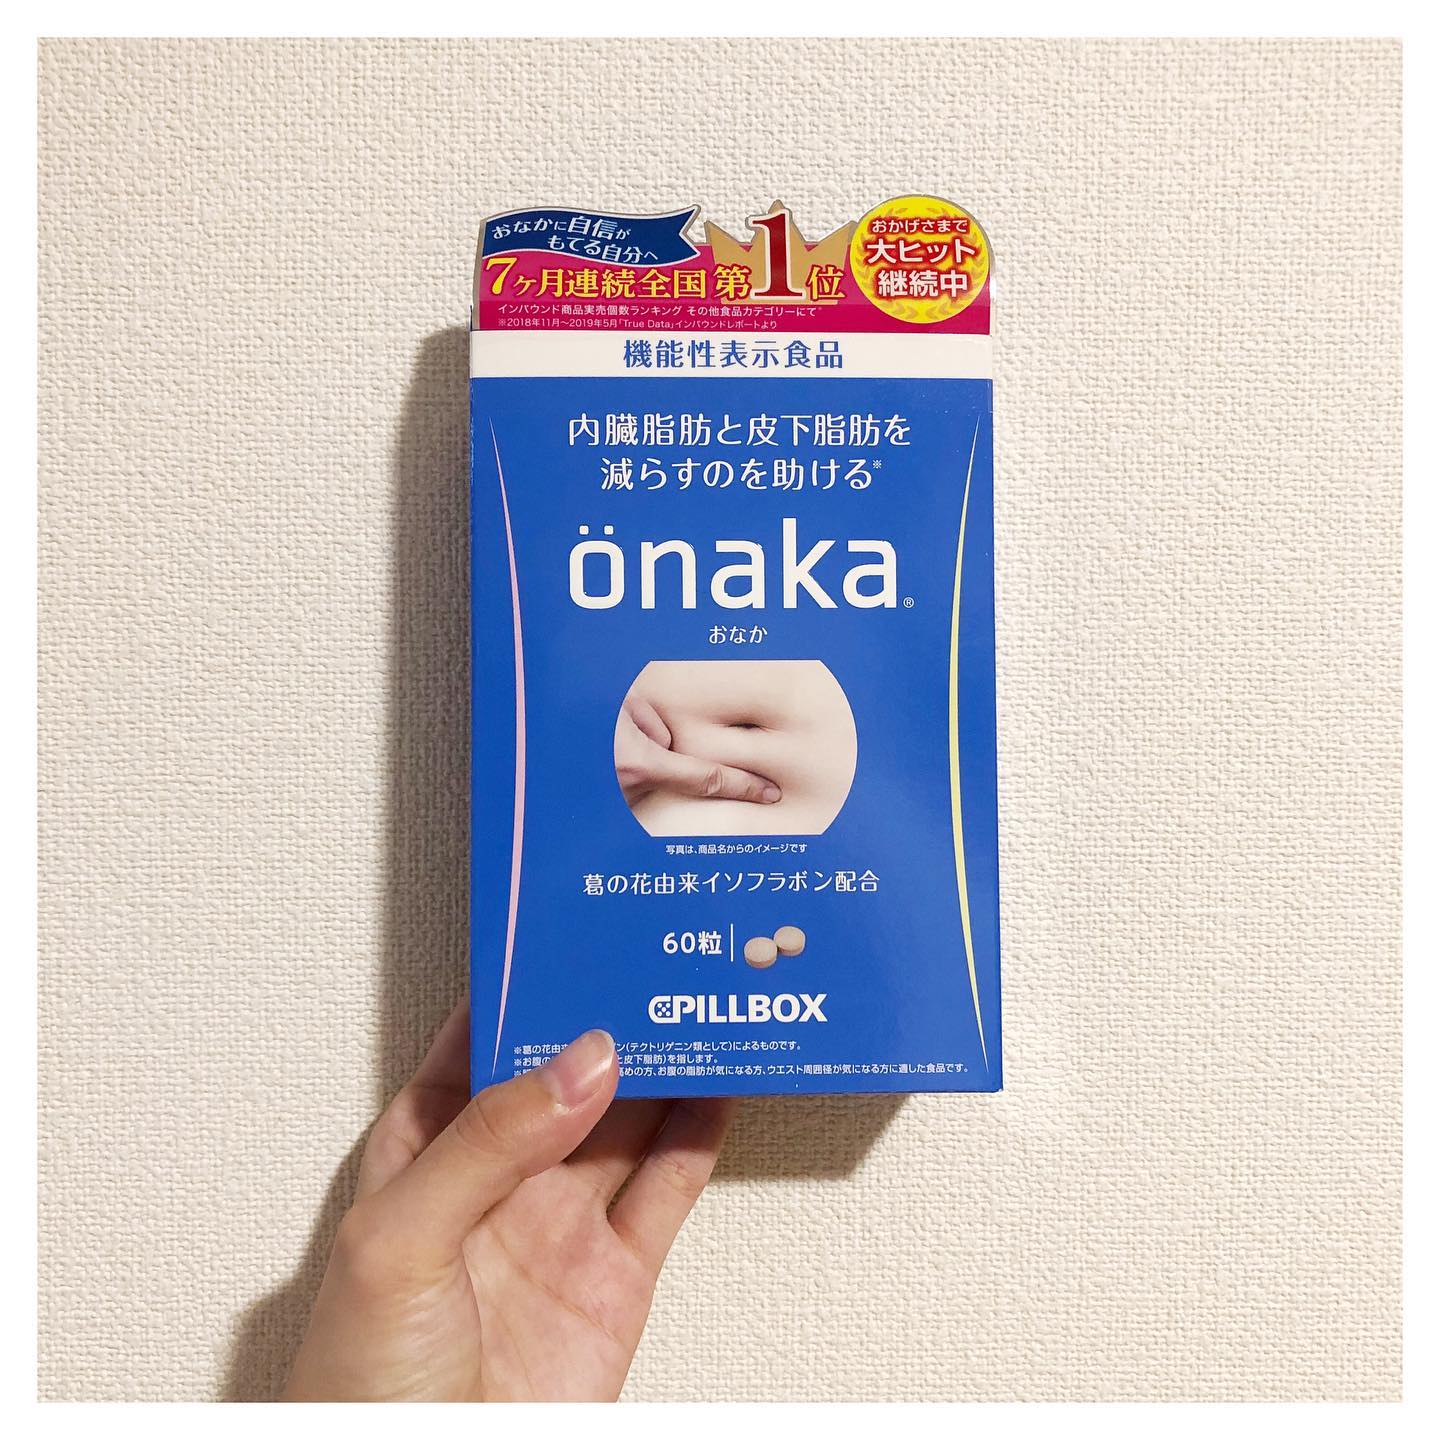 口コミ投稿：．産後太りのおなかにönaka‼︎．#önaka #onaka #機能性表示食品 #おなか #葛の花 #ピ…